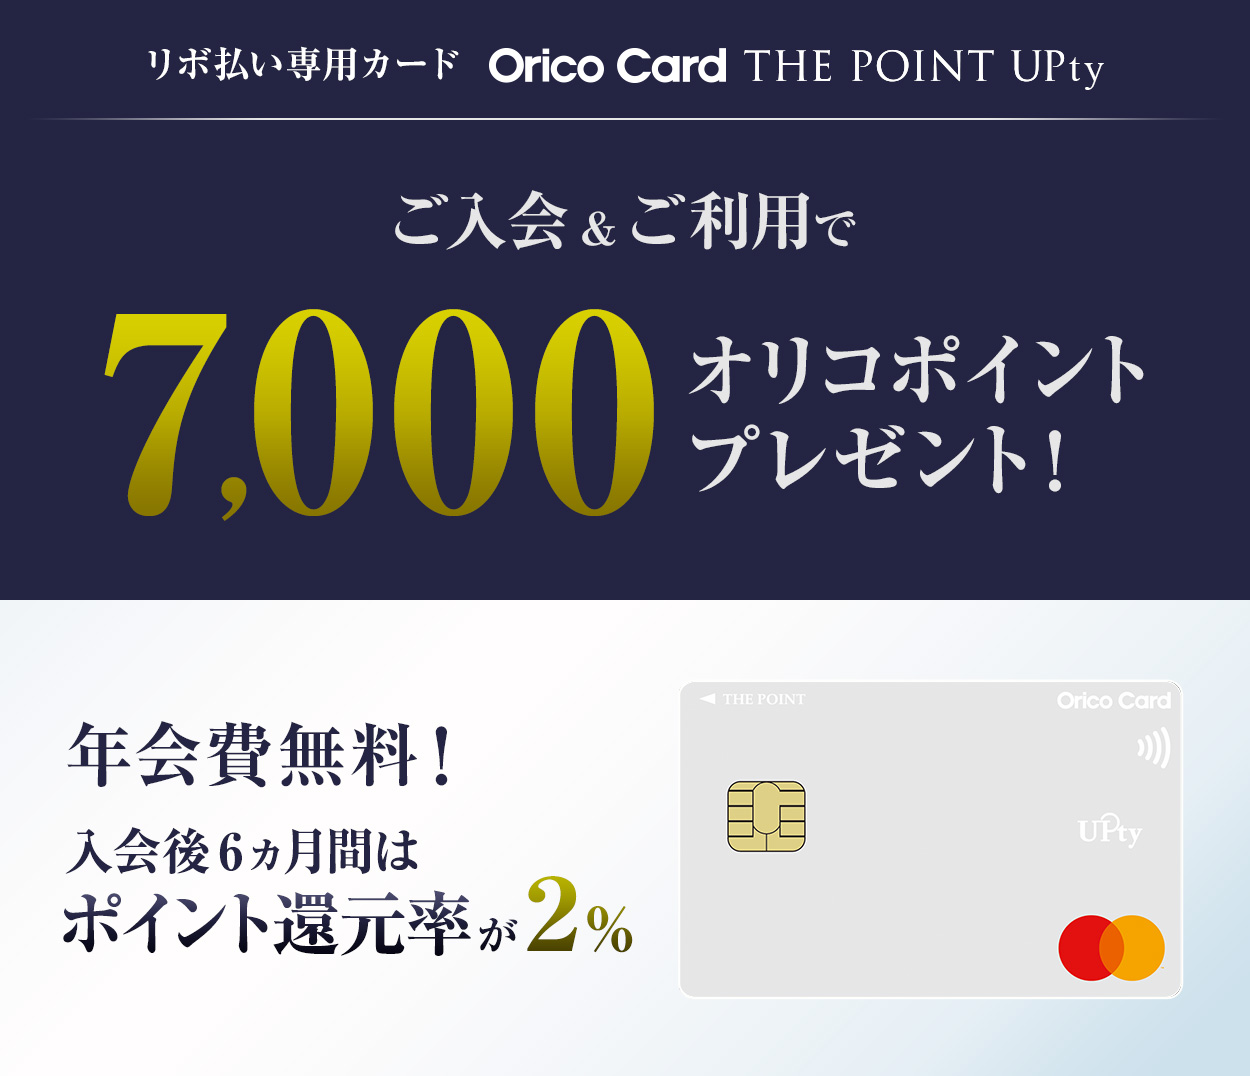 リボ払い専用カード Orico Card THW POINT UPty ご入会&ご利用で最大9,000オリコポイントプレゼント! 年会費無料! 入会後6ヶ月間はポイント還元率が2%